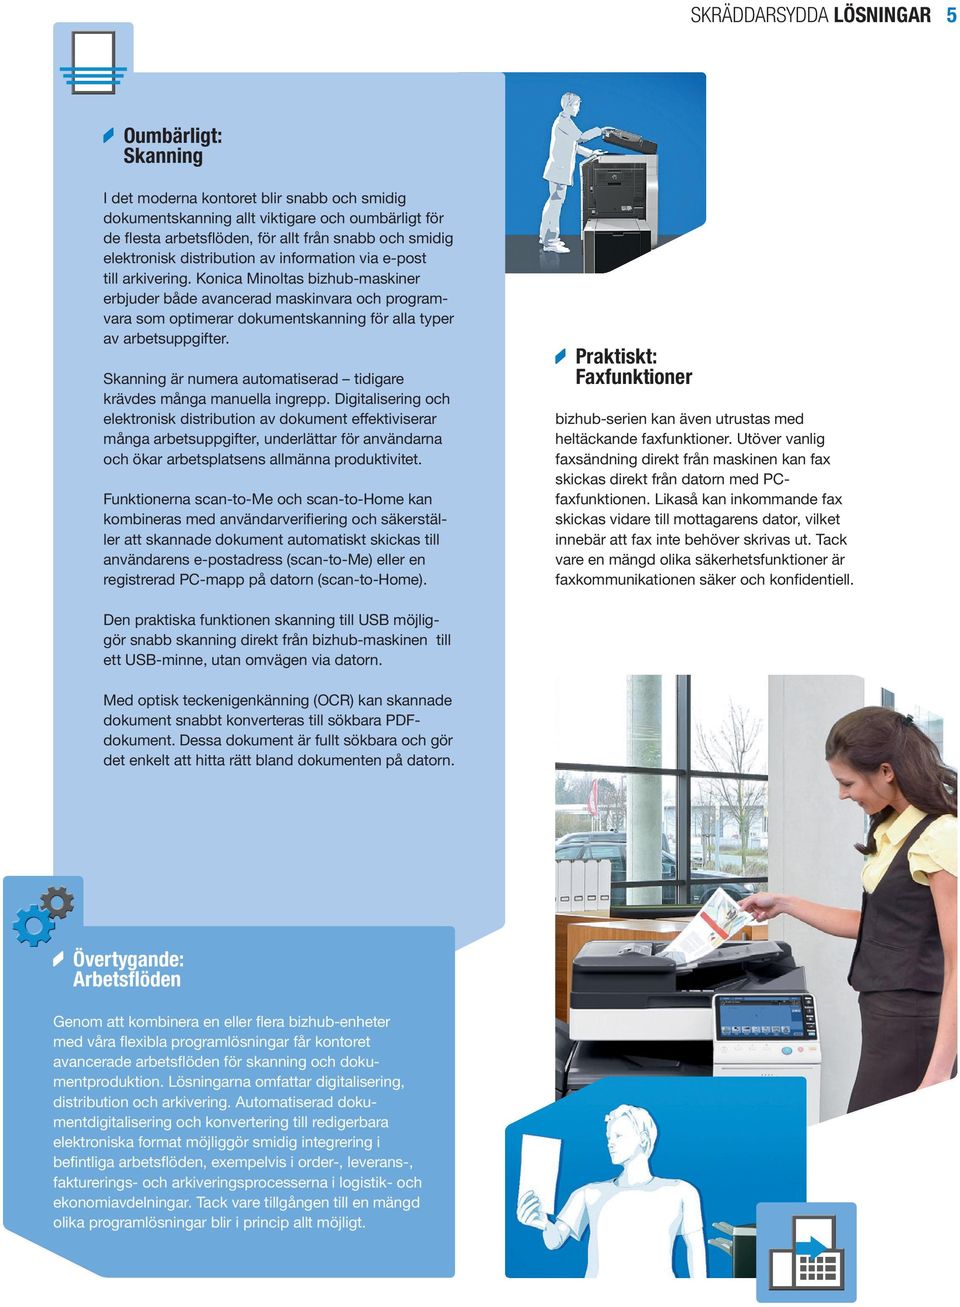 Konica Minoltas bizhub-maskiner erbjuder både avancerad maskinvara och programvara som optimerar dokumentskanning för alla typer av arbetsuppgifter.